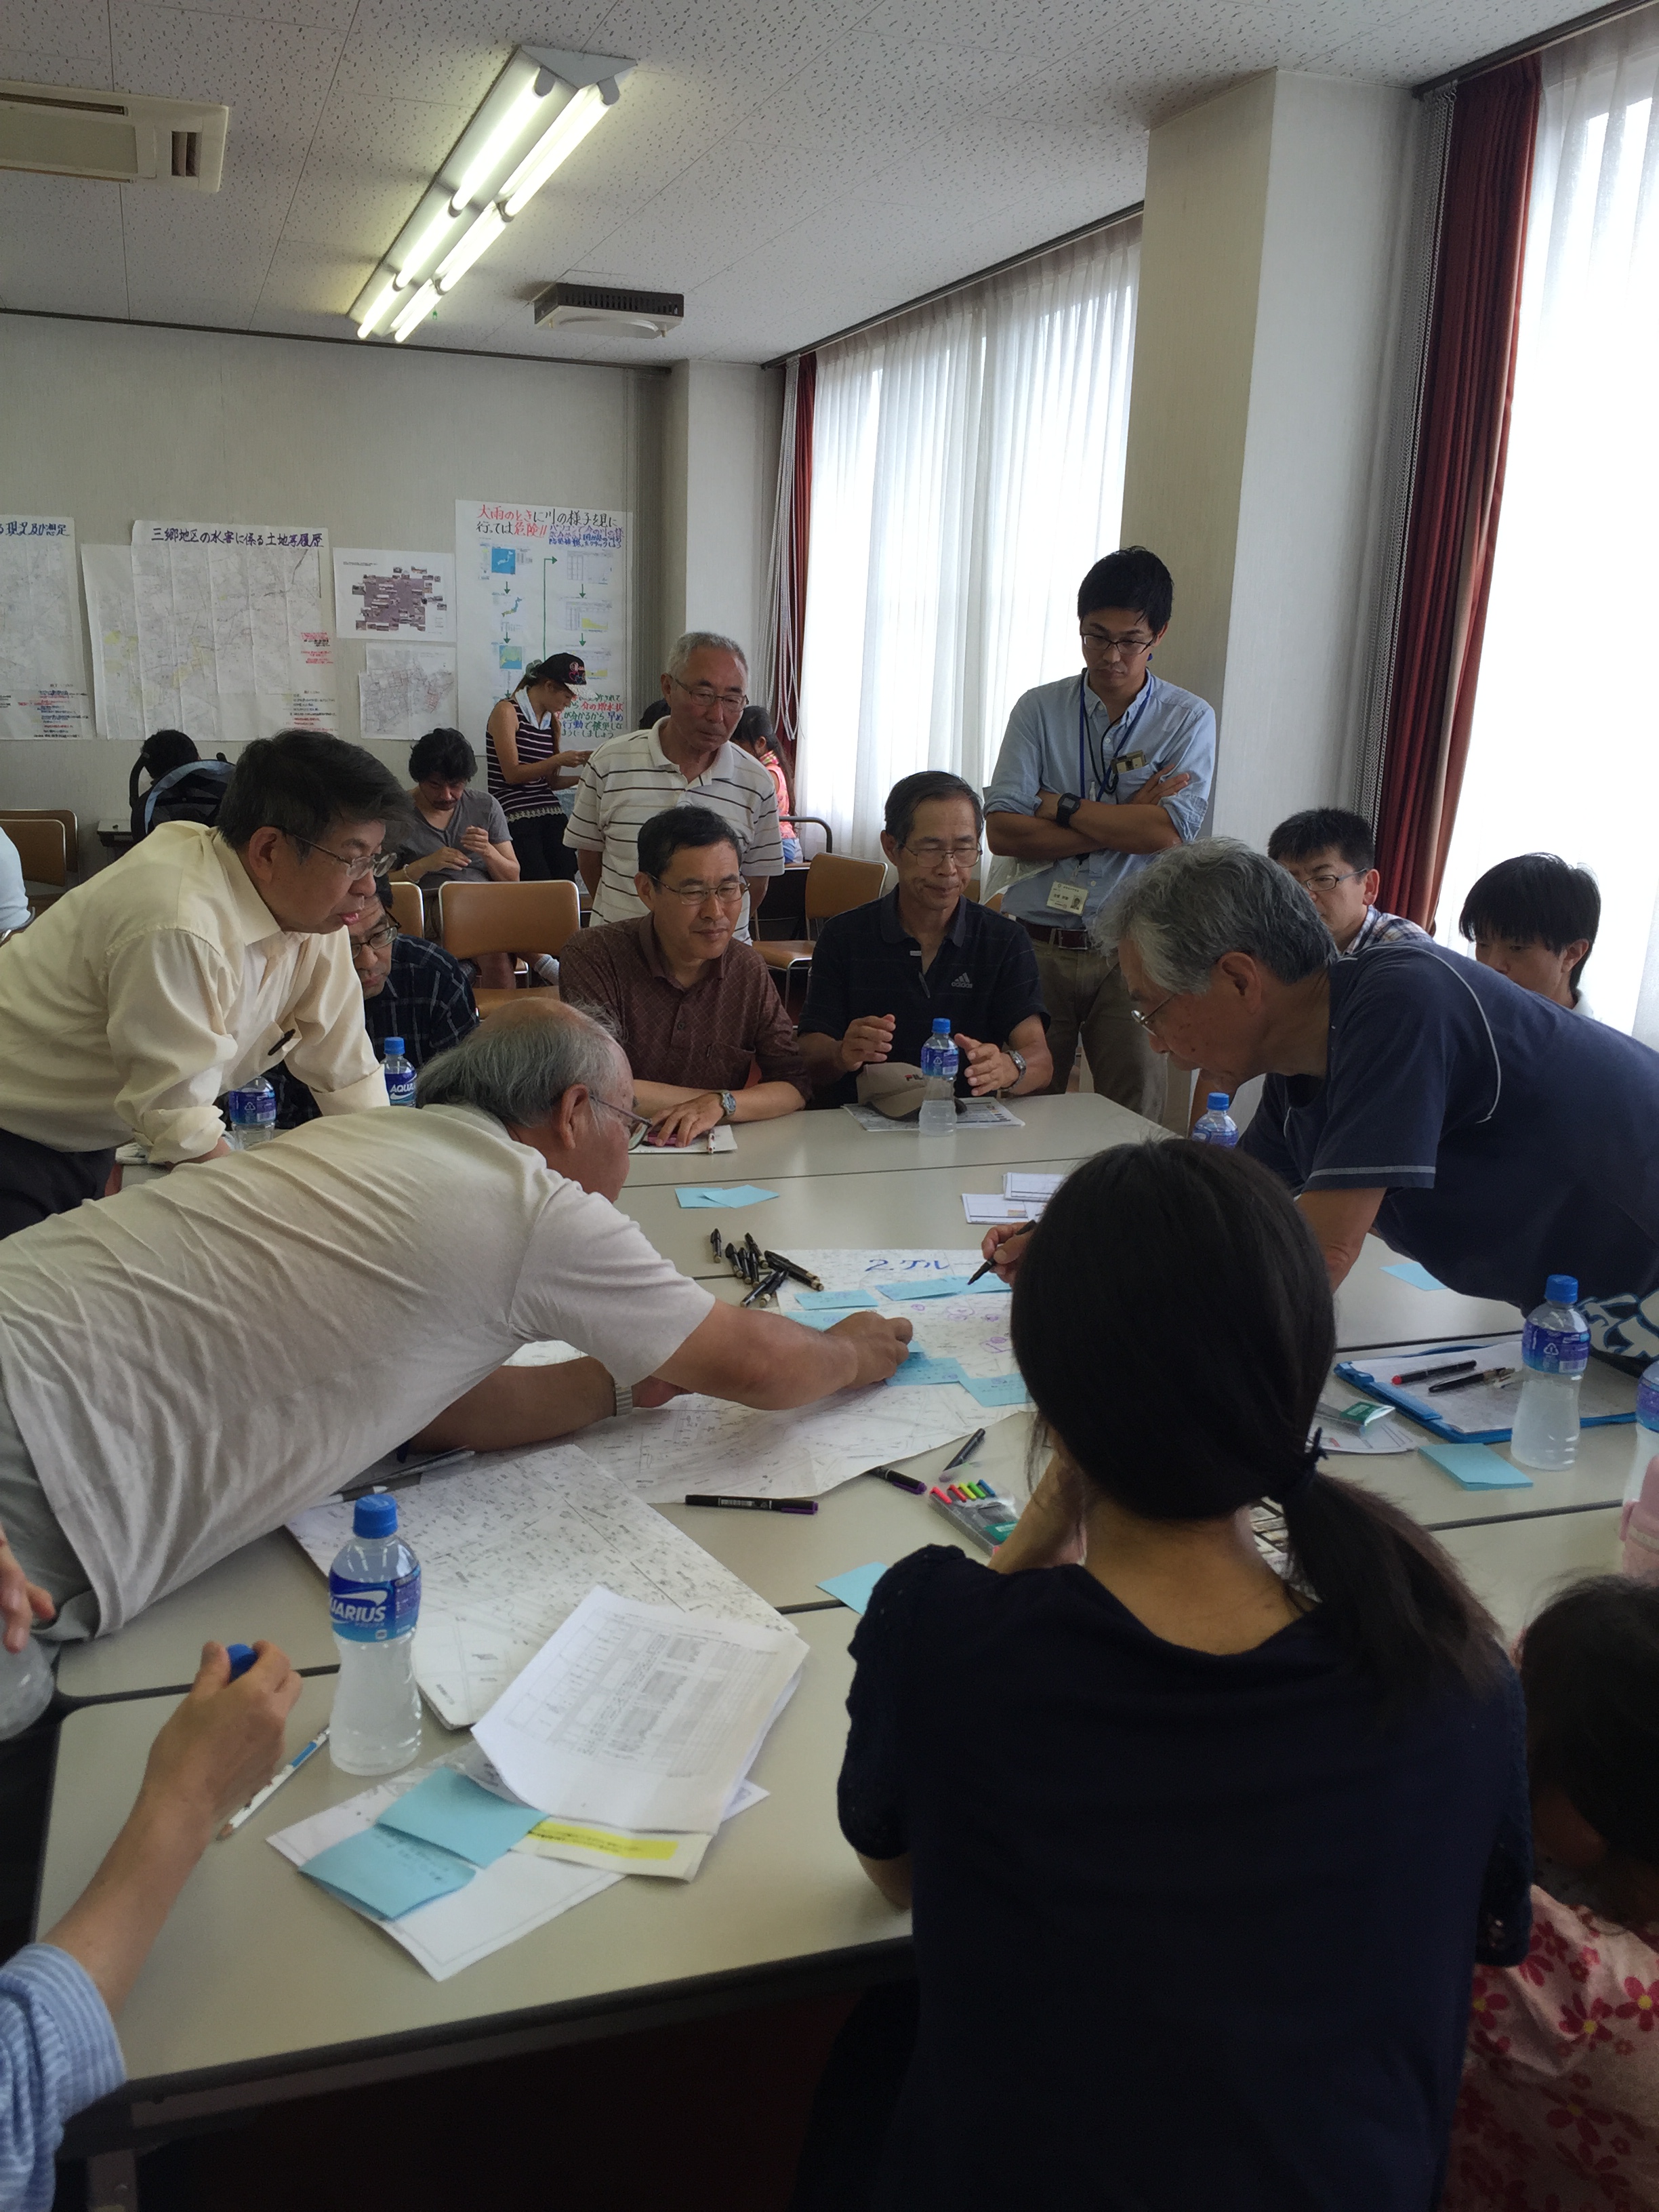 Workshop for community disaster mitigation